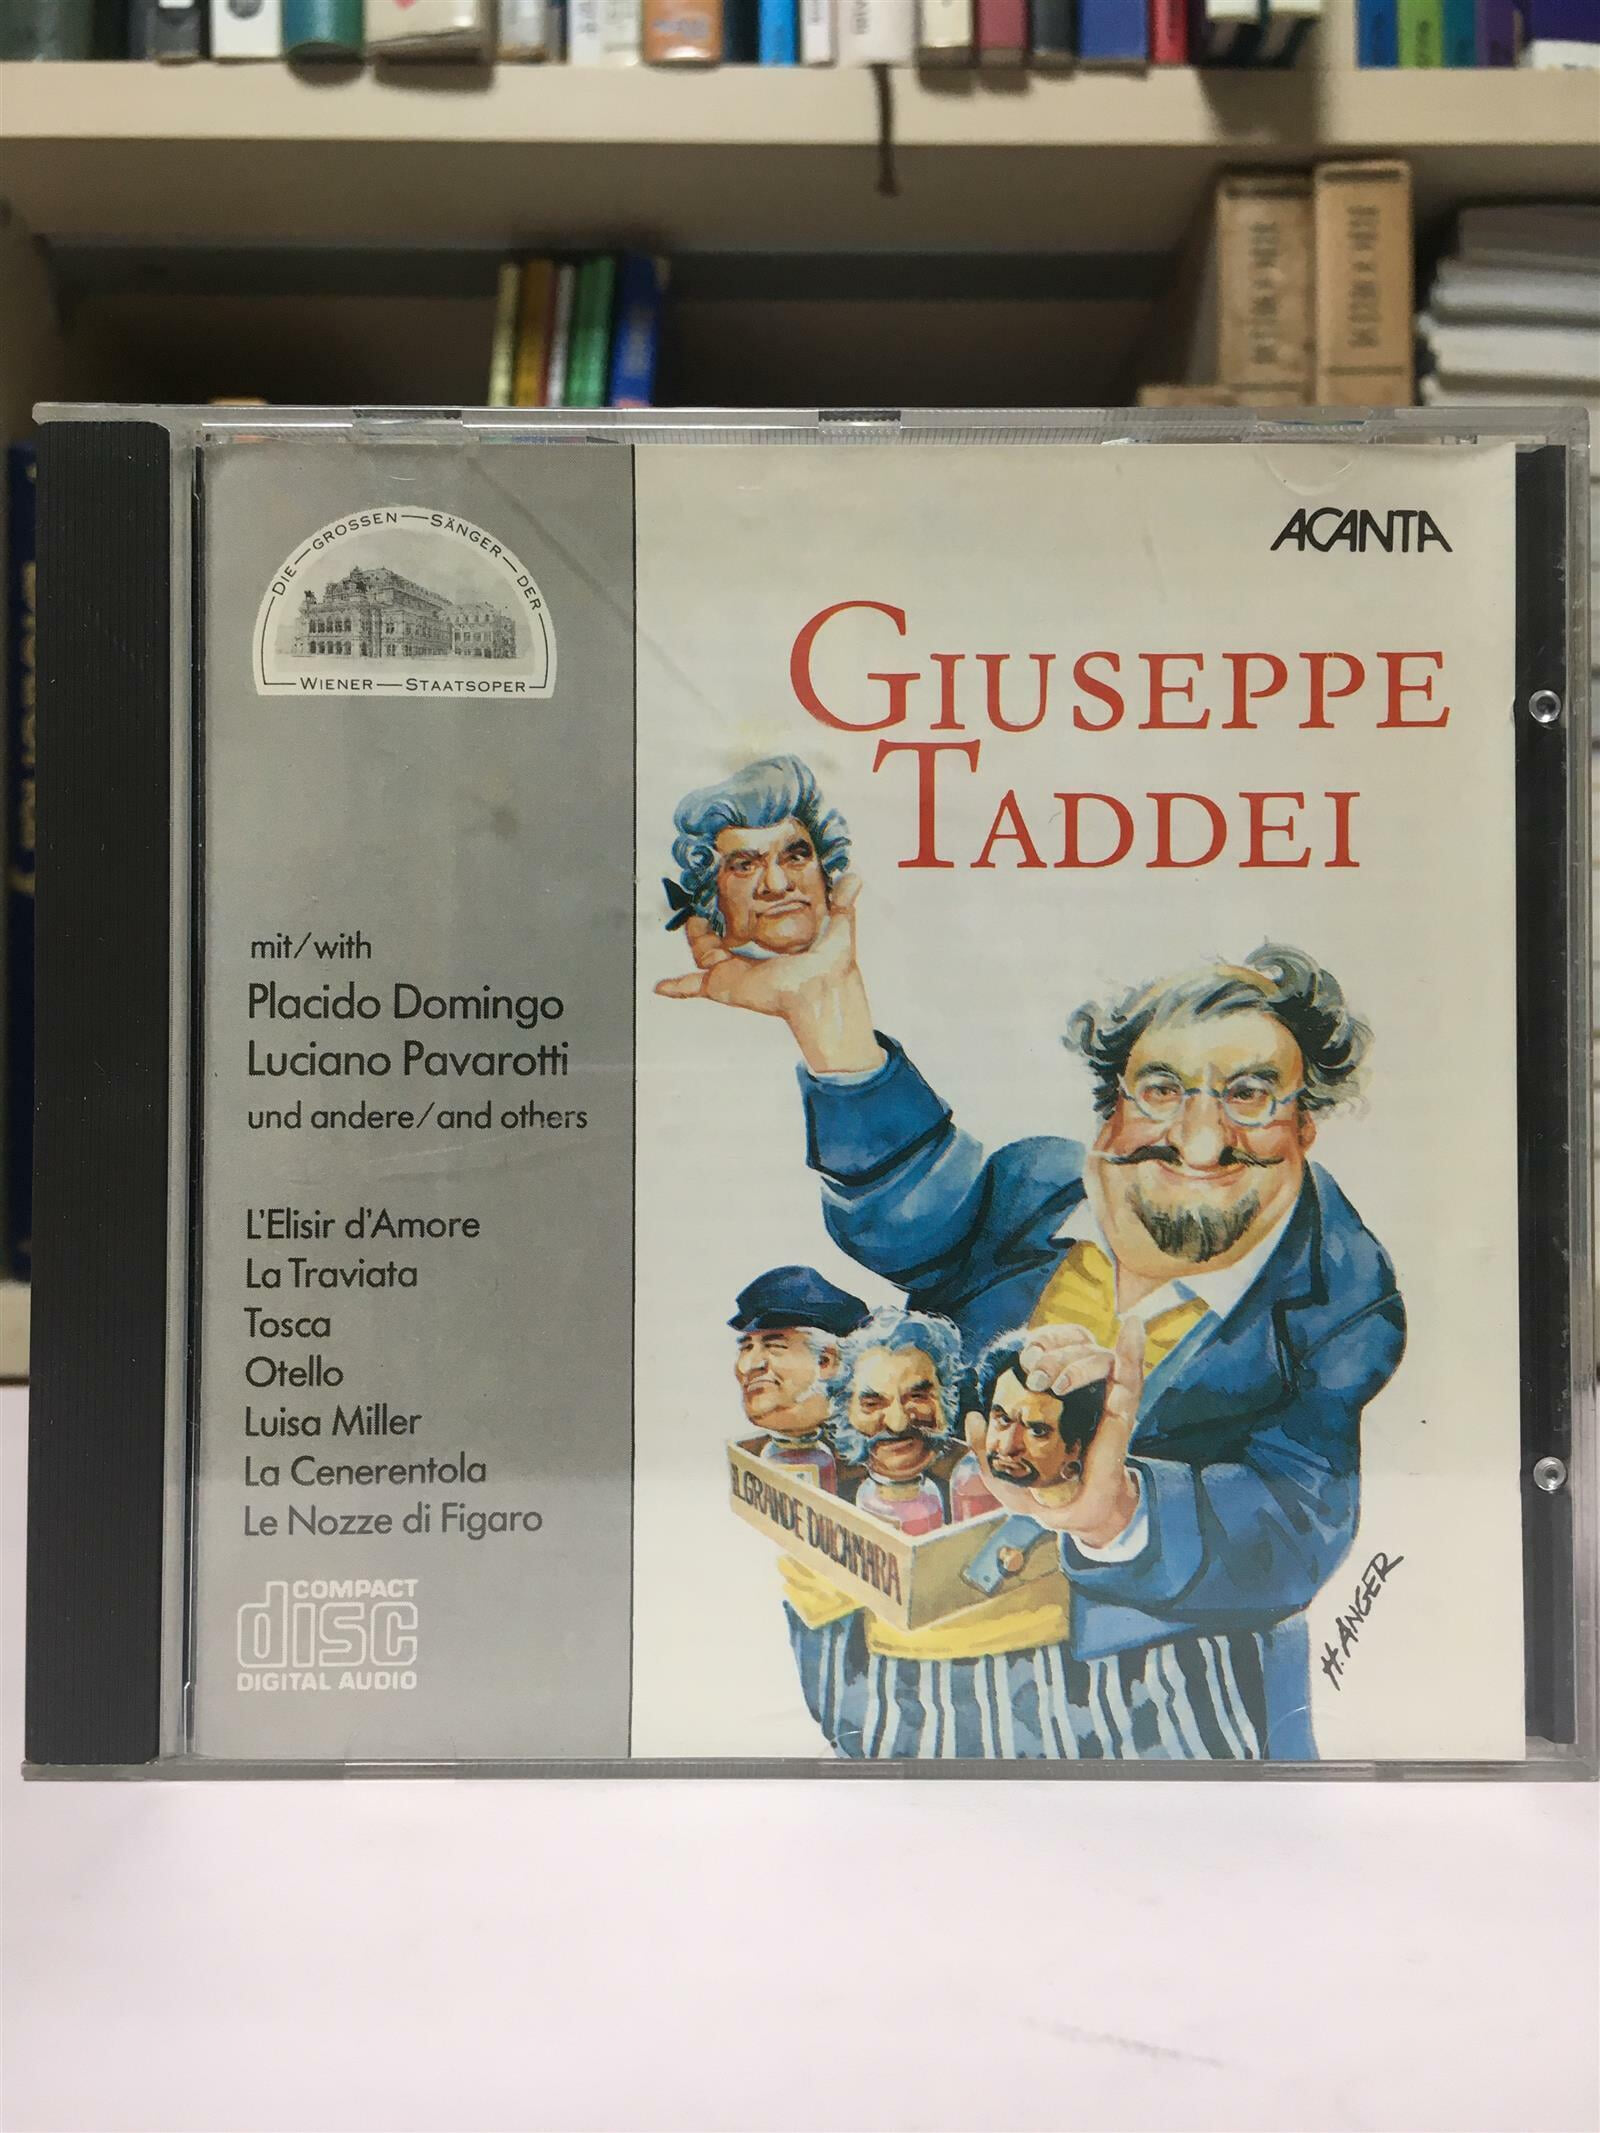 (수입)(CD)GIUSEPPE TADDEI: Opera arias, duets and more (ACANTA label)